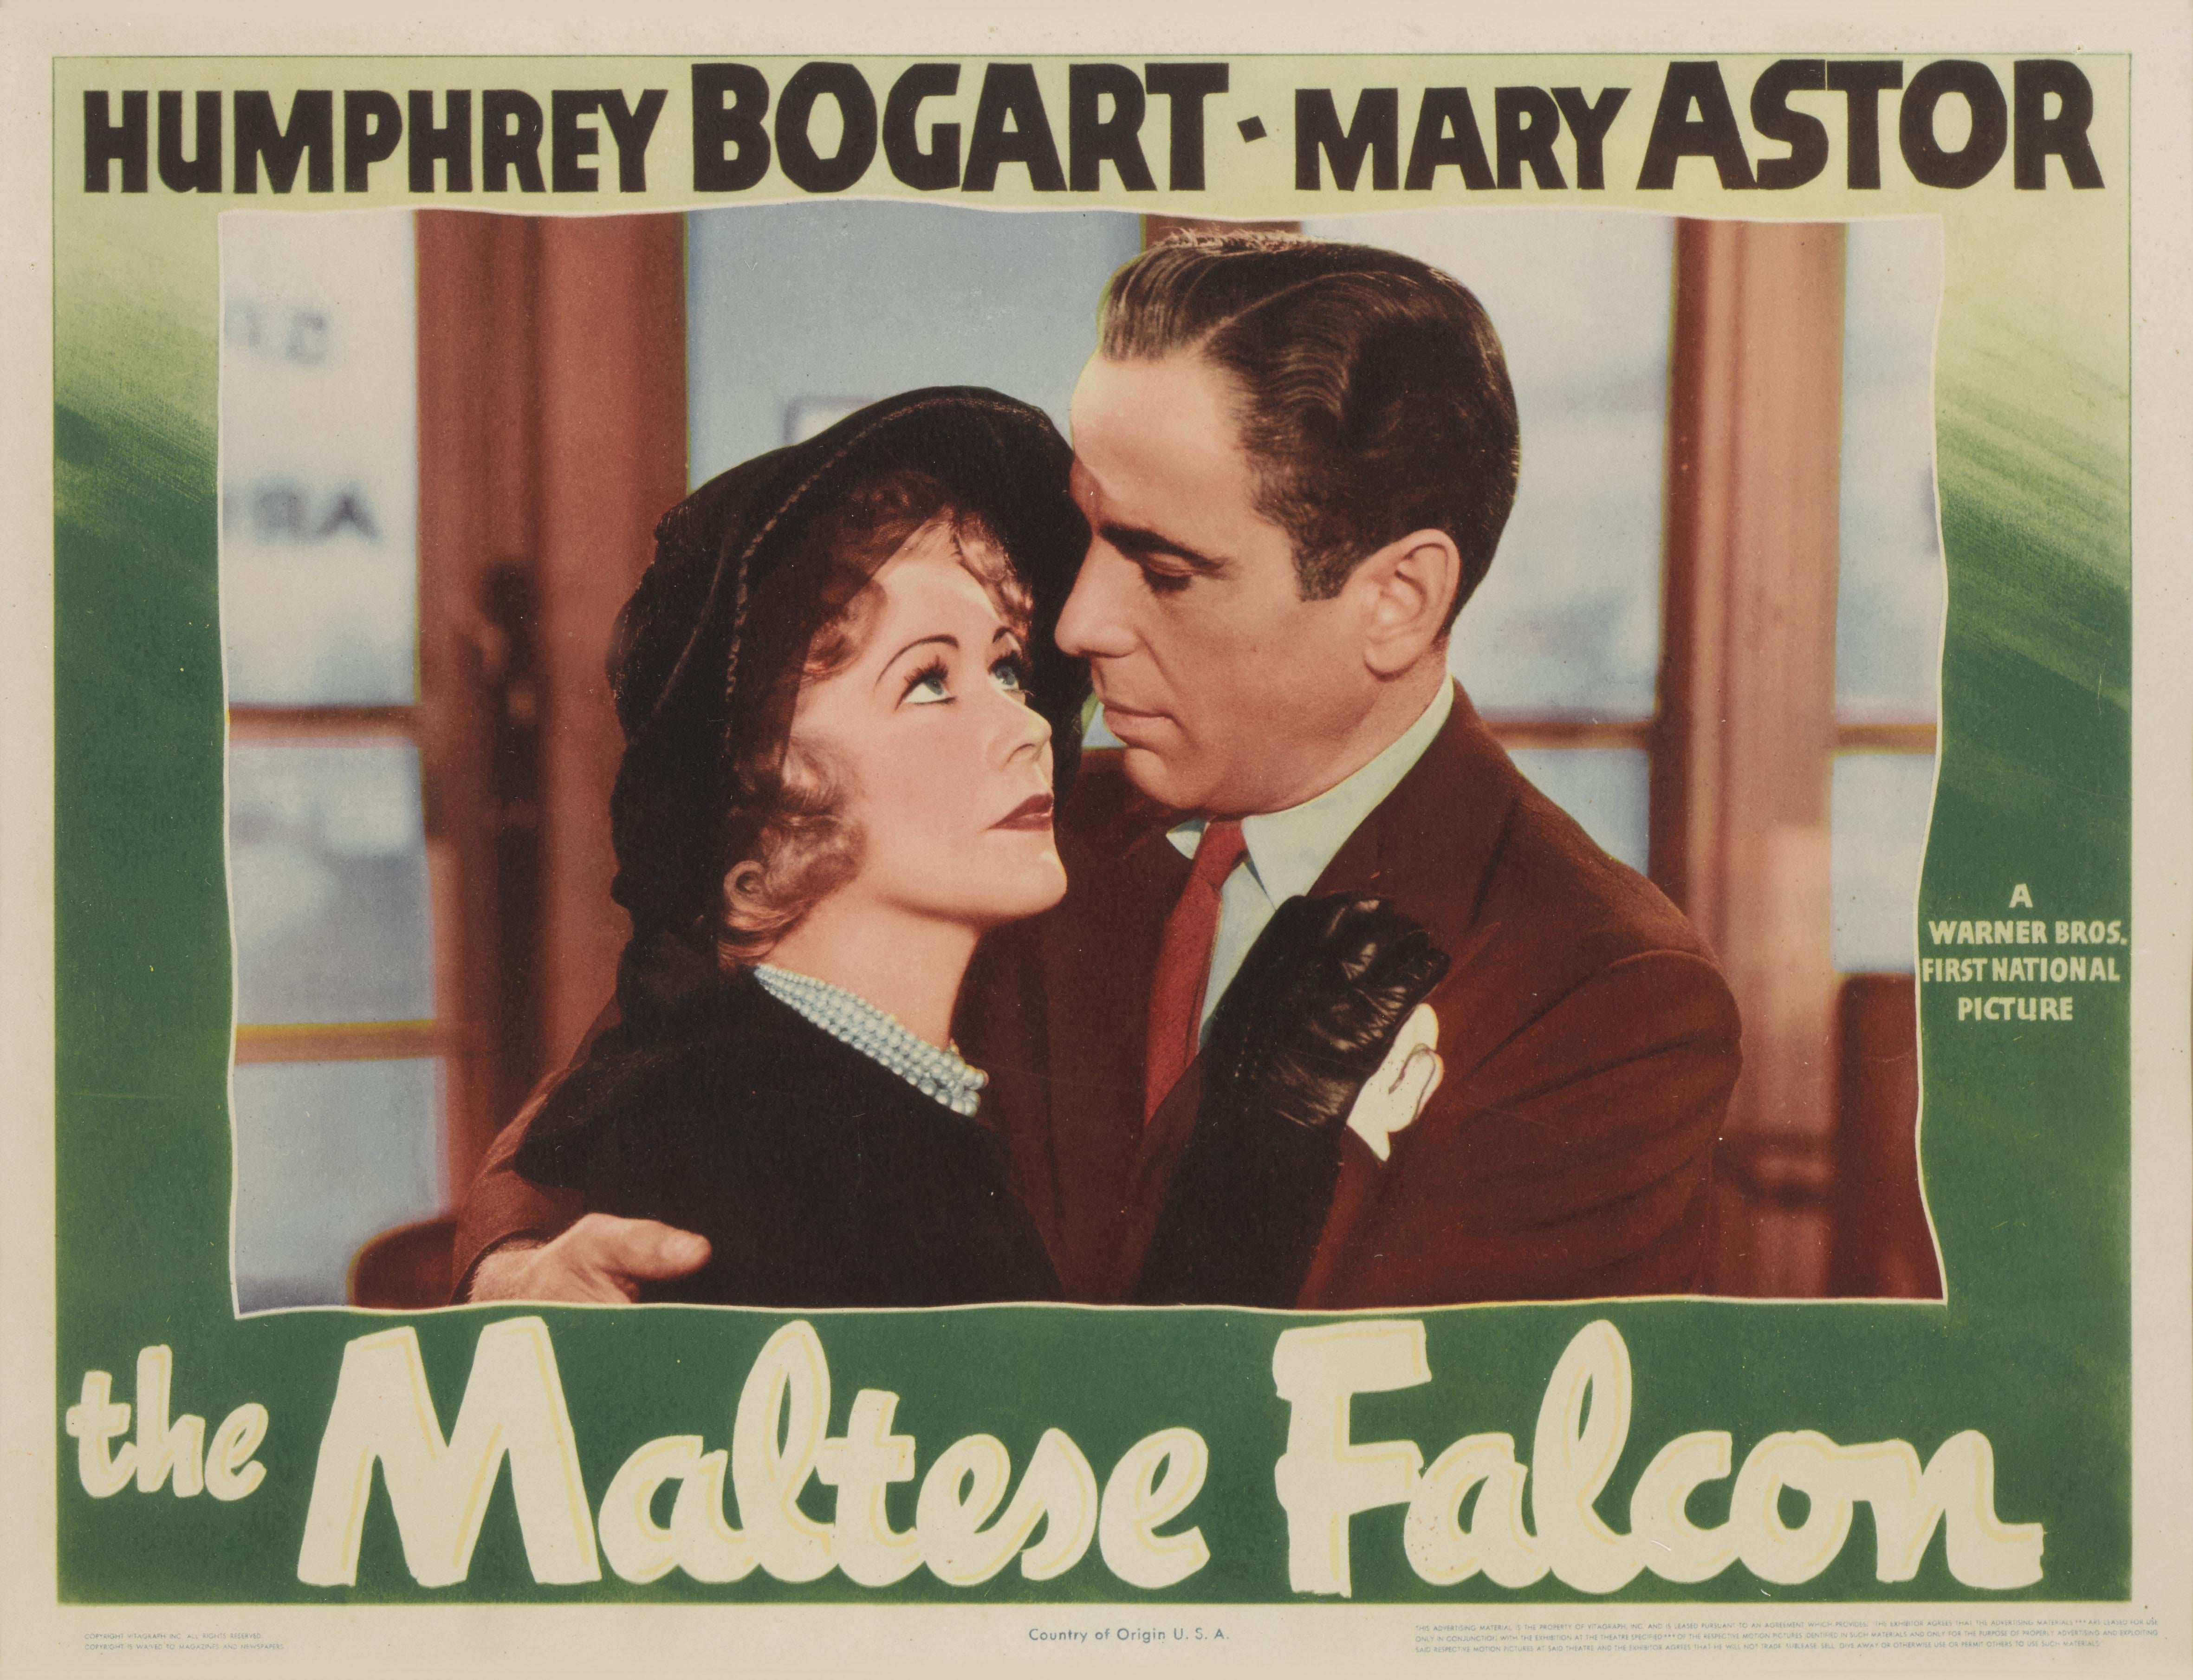 American The Maltese Falcon For Sale